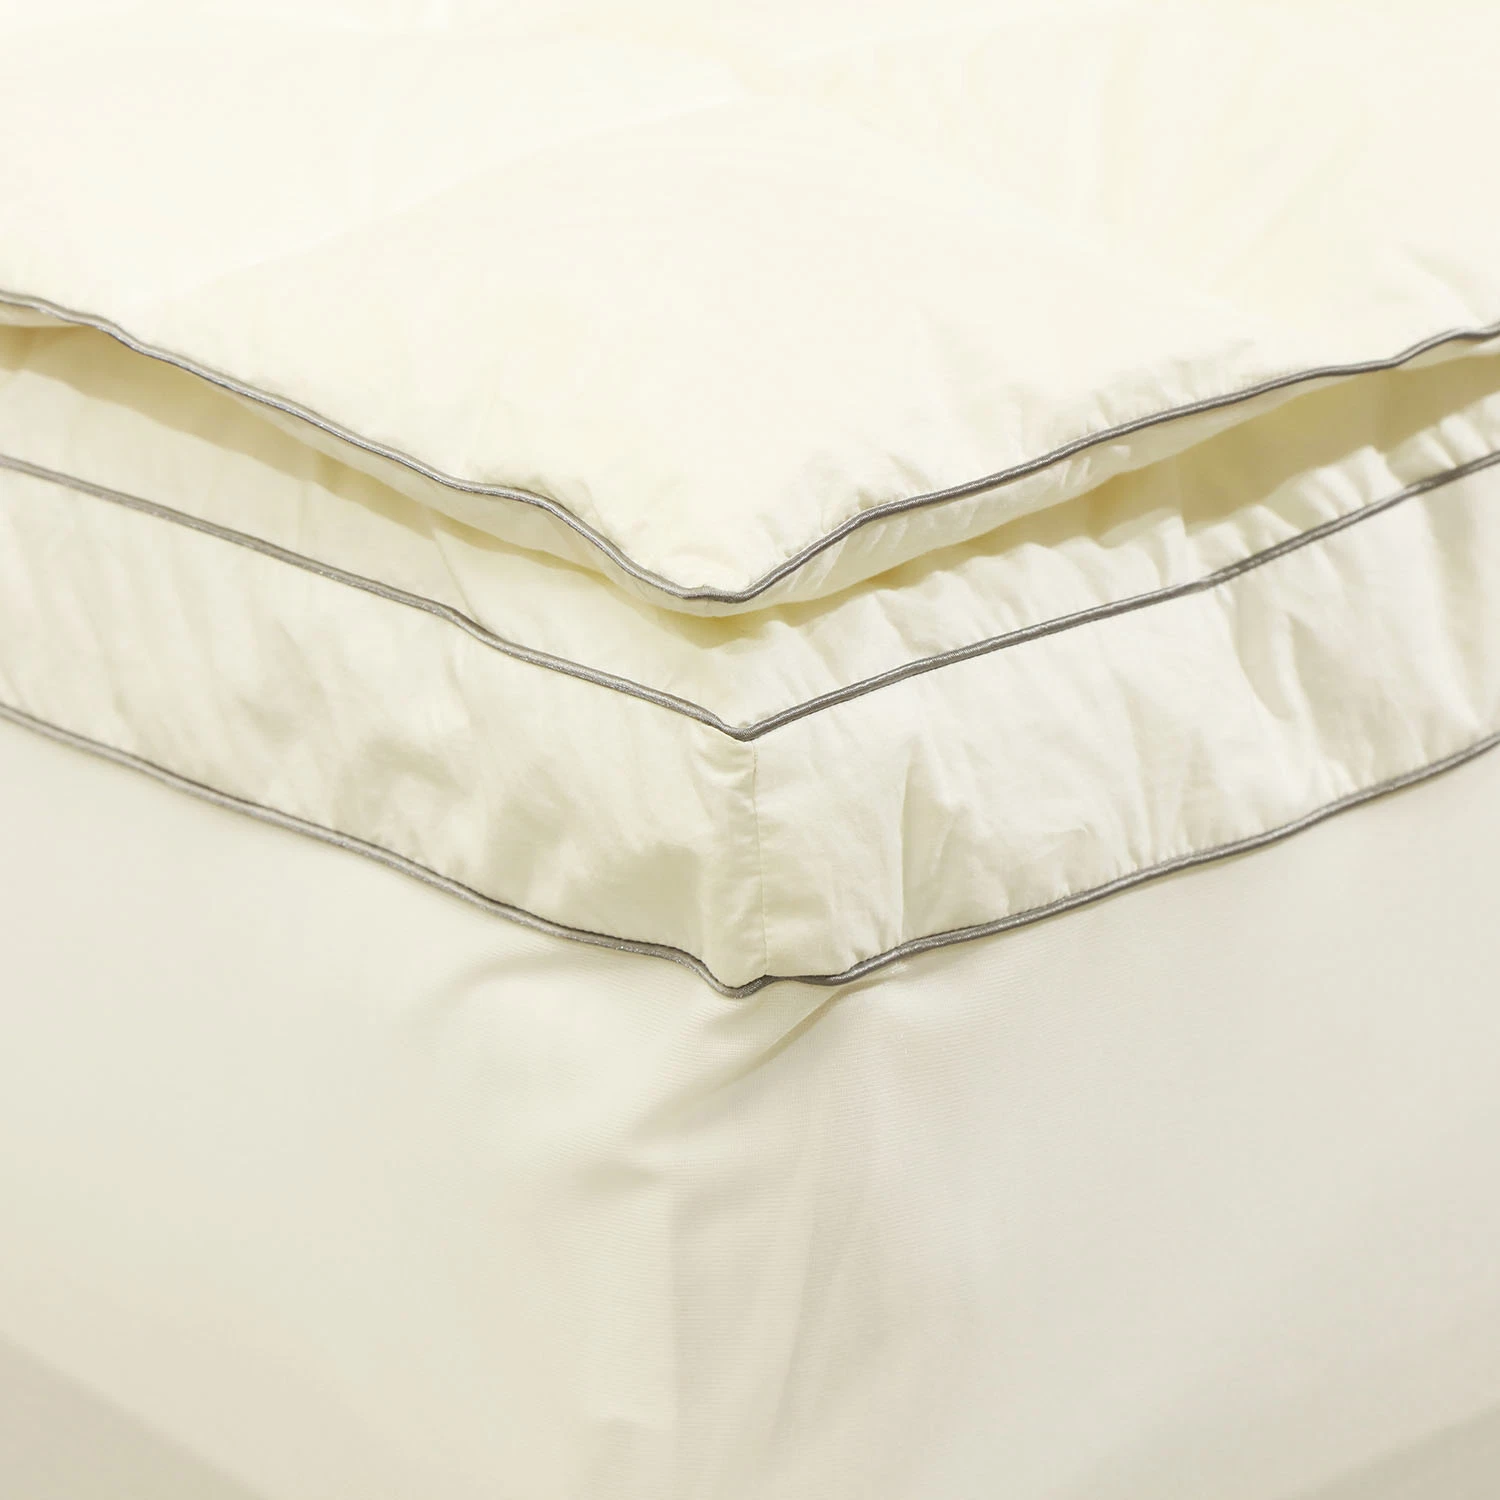 الصفحة الرئيسية المنسوجات المنتجات البط الأبيض الساخنة ملء للأسفل فراش السرير